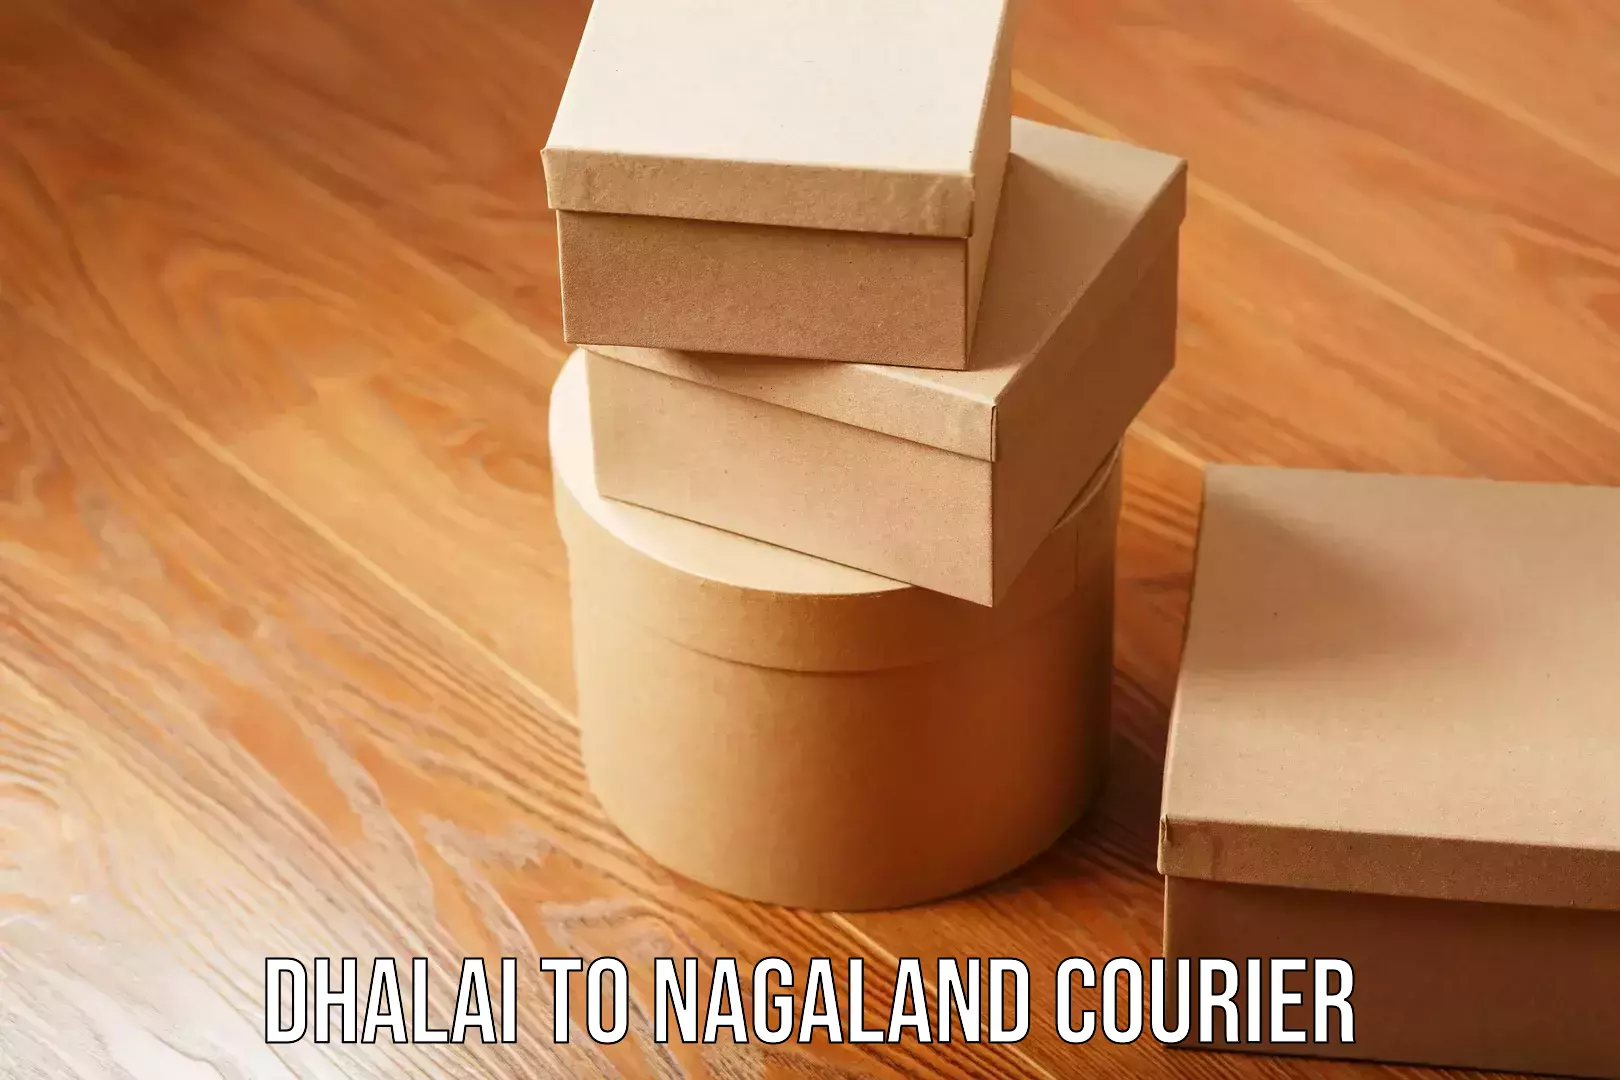 Express postal services Dhalai to Nagaland